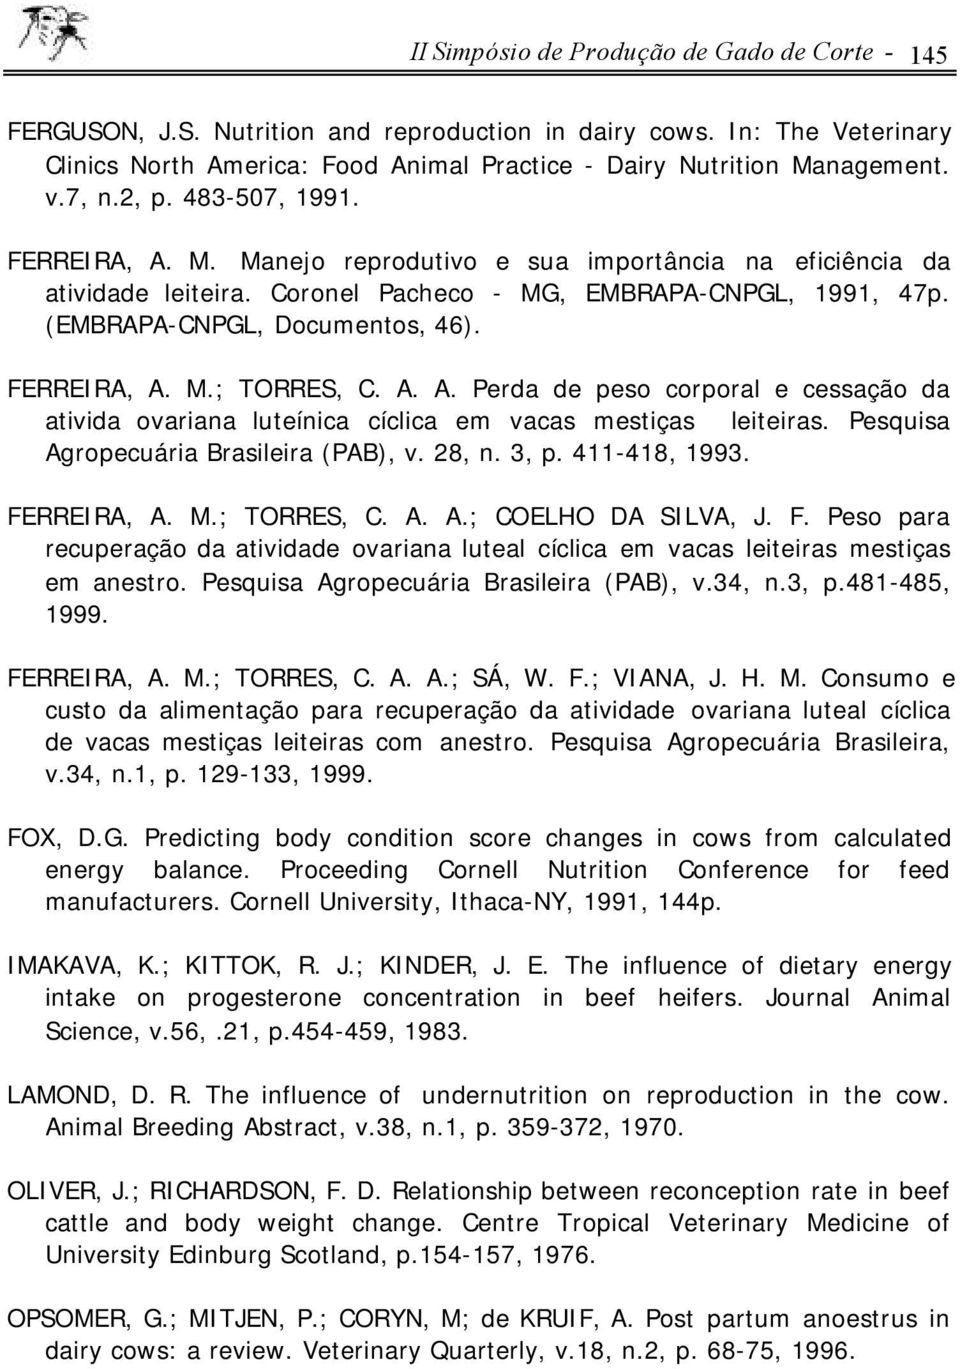 FERREIRA, A. M.; TORRES, C. A. A. Perda de peso corporal e cessação da ativida ovariana luteínica cíclica em vacas mestiças leiteiras. Pesquisa Agropecuária Brasileira (PAB), v. 28, n. 3, p.